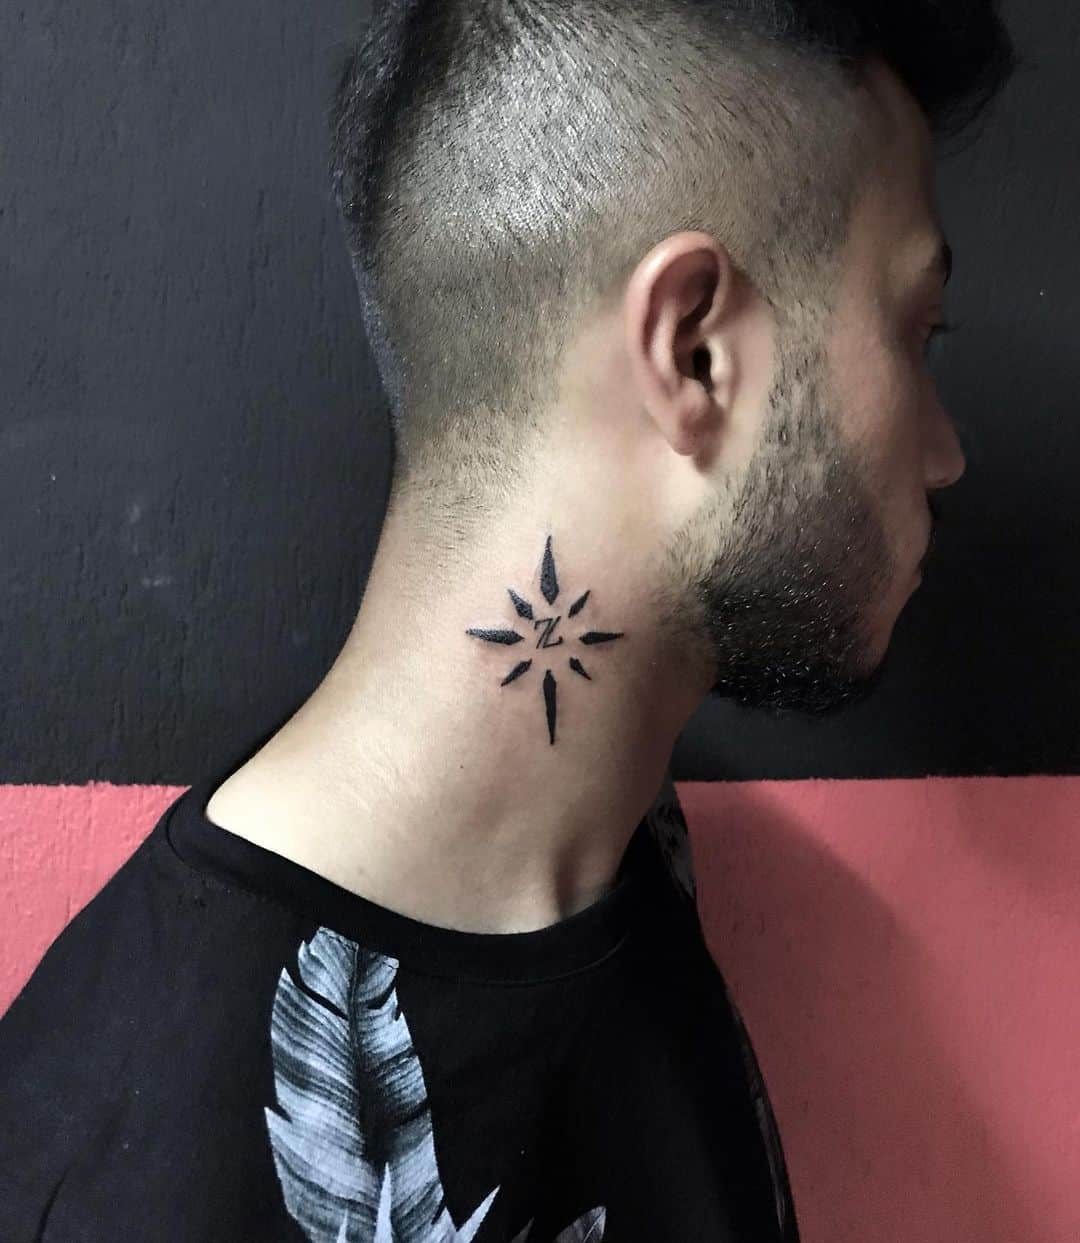 Star Neck Tattoo